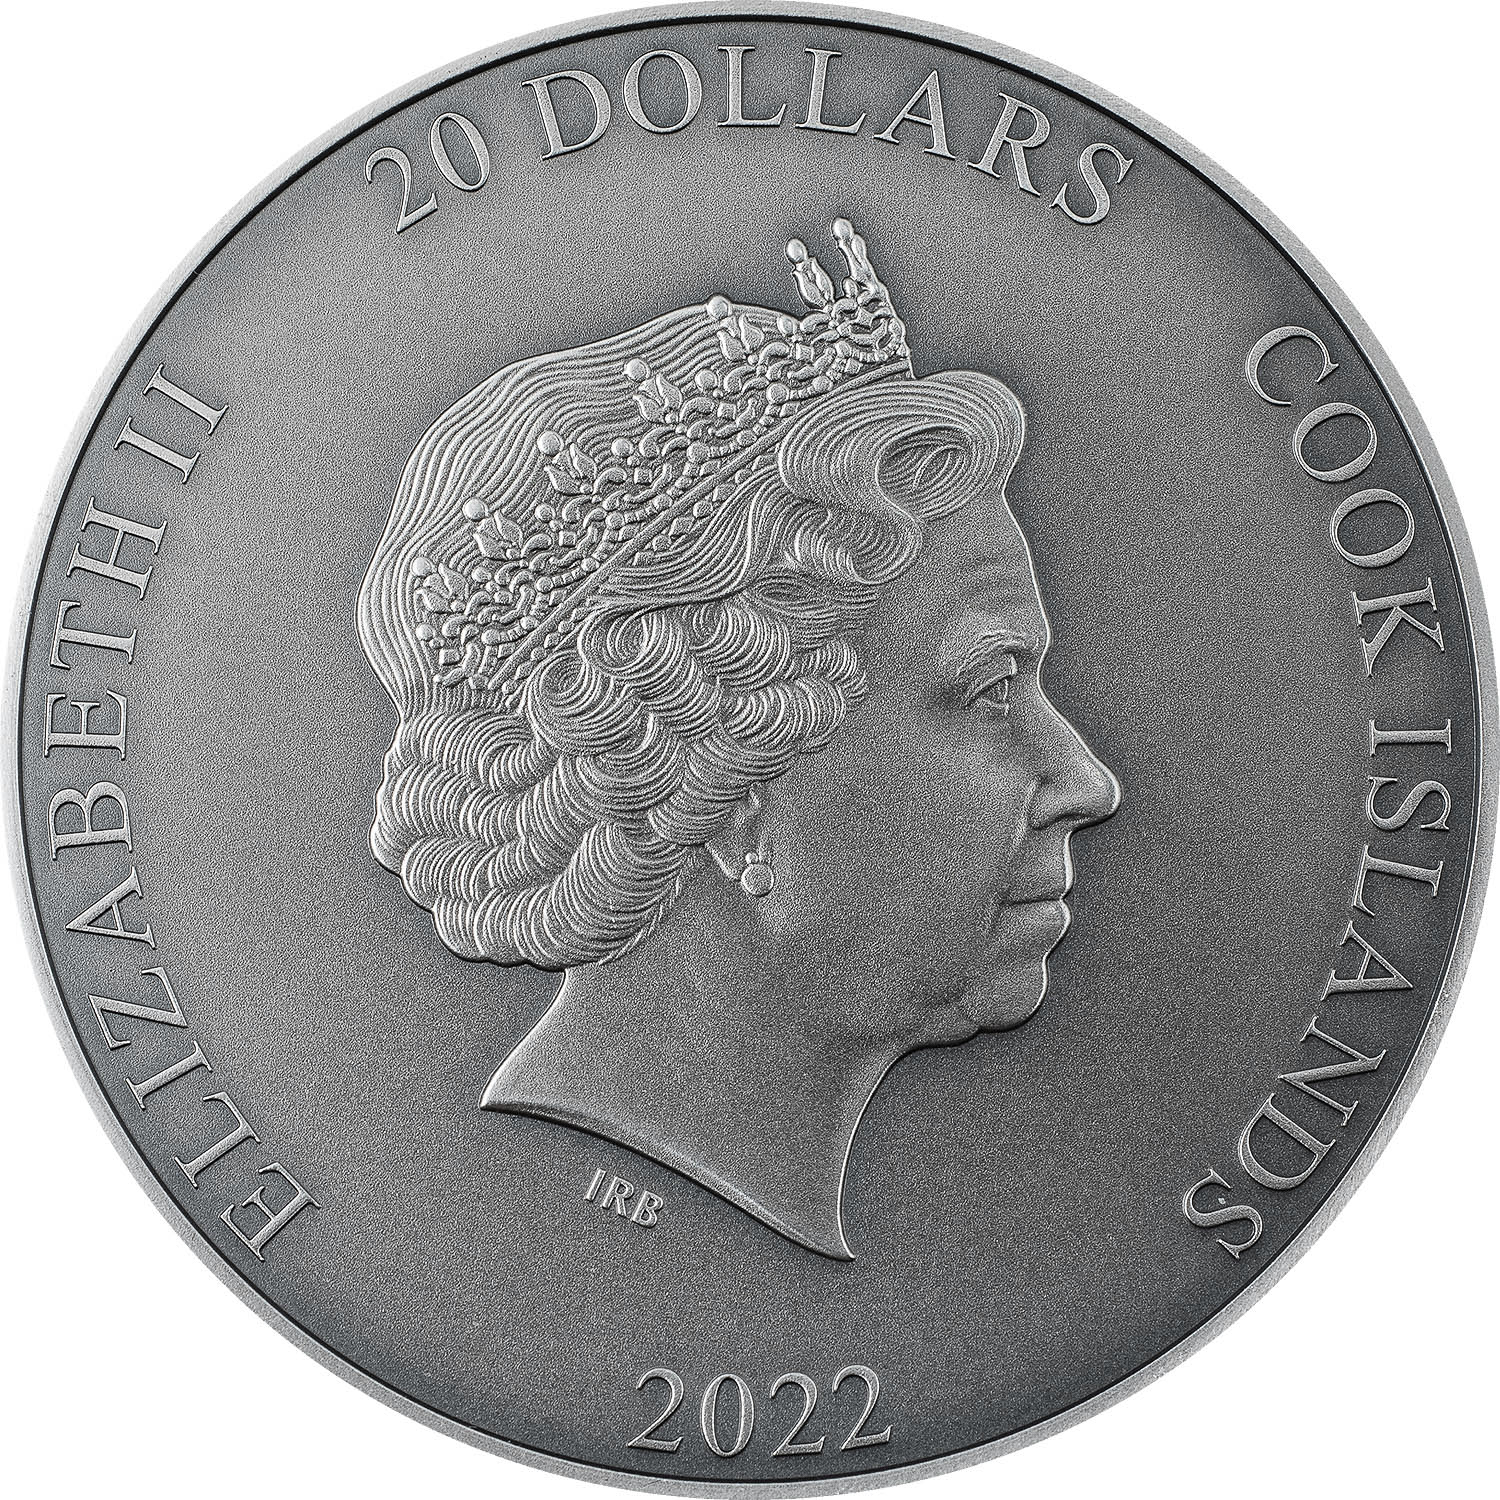 Cook Islands 2022 20 Dollars elios: The Sun God, God Series Silver Coin